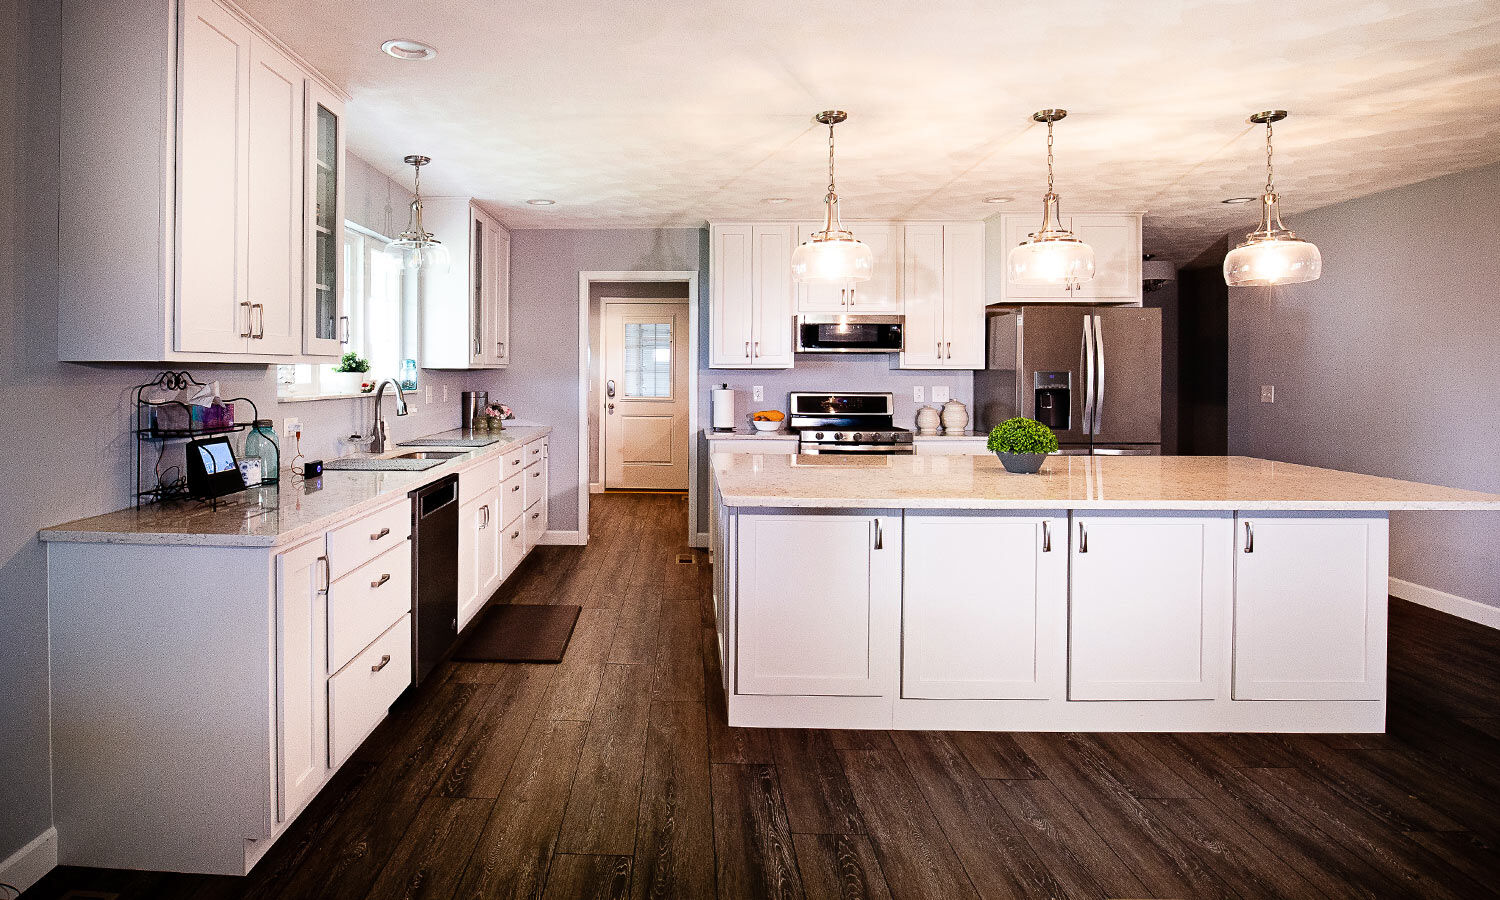 Kitchen Design & Sales | Studio 11 Cabinets & Design 62236